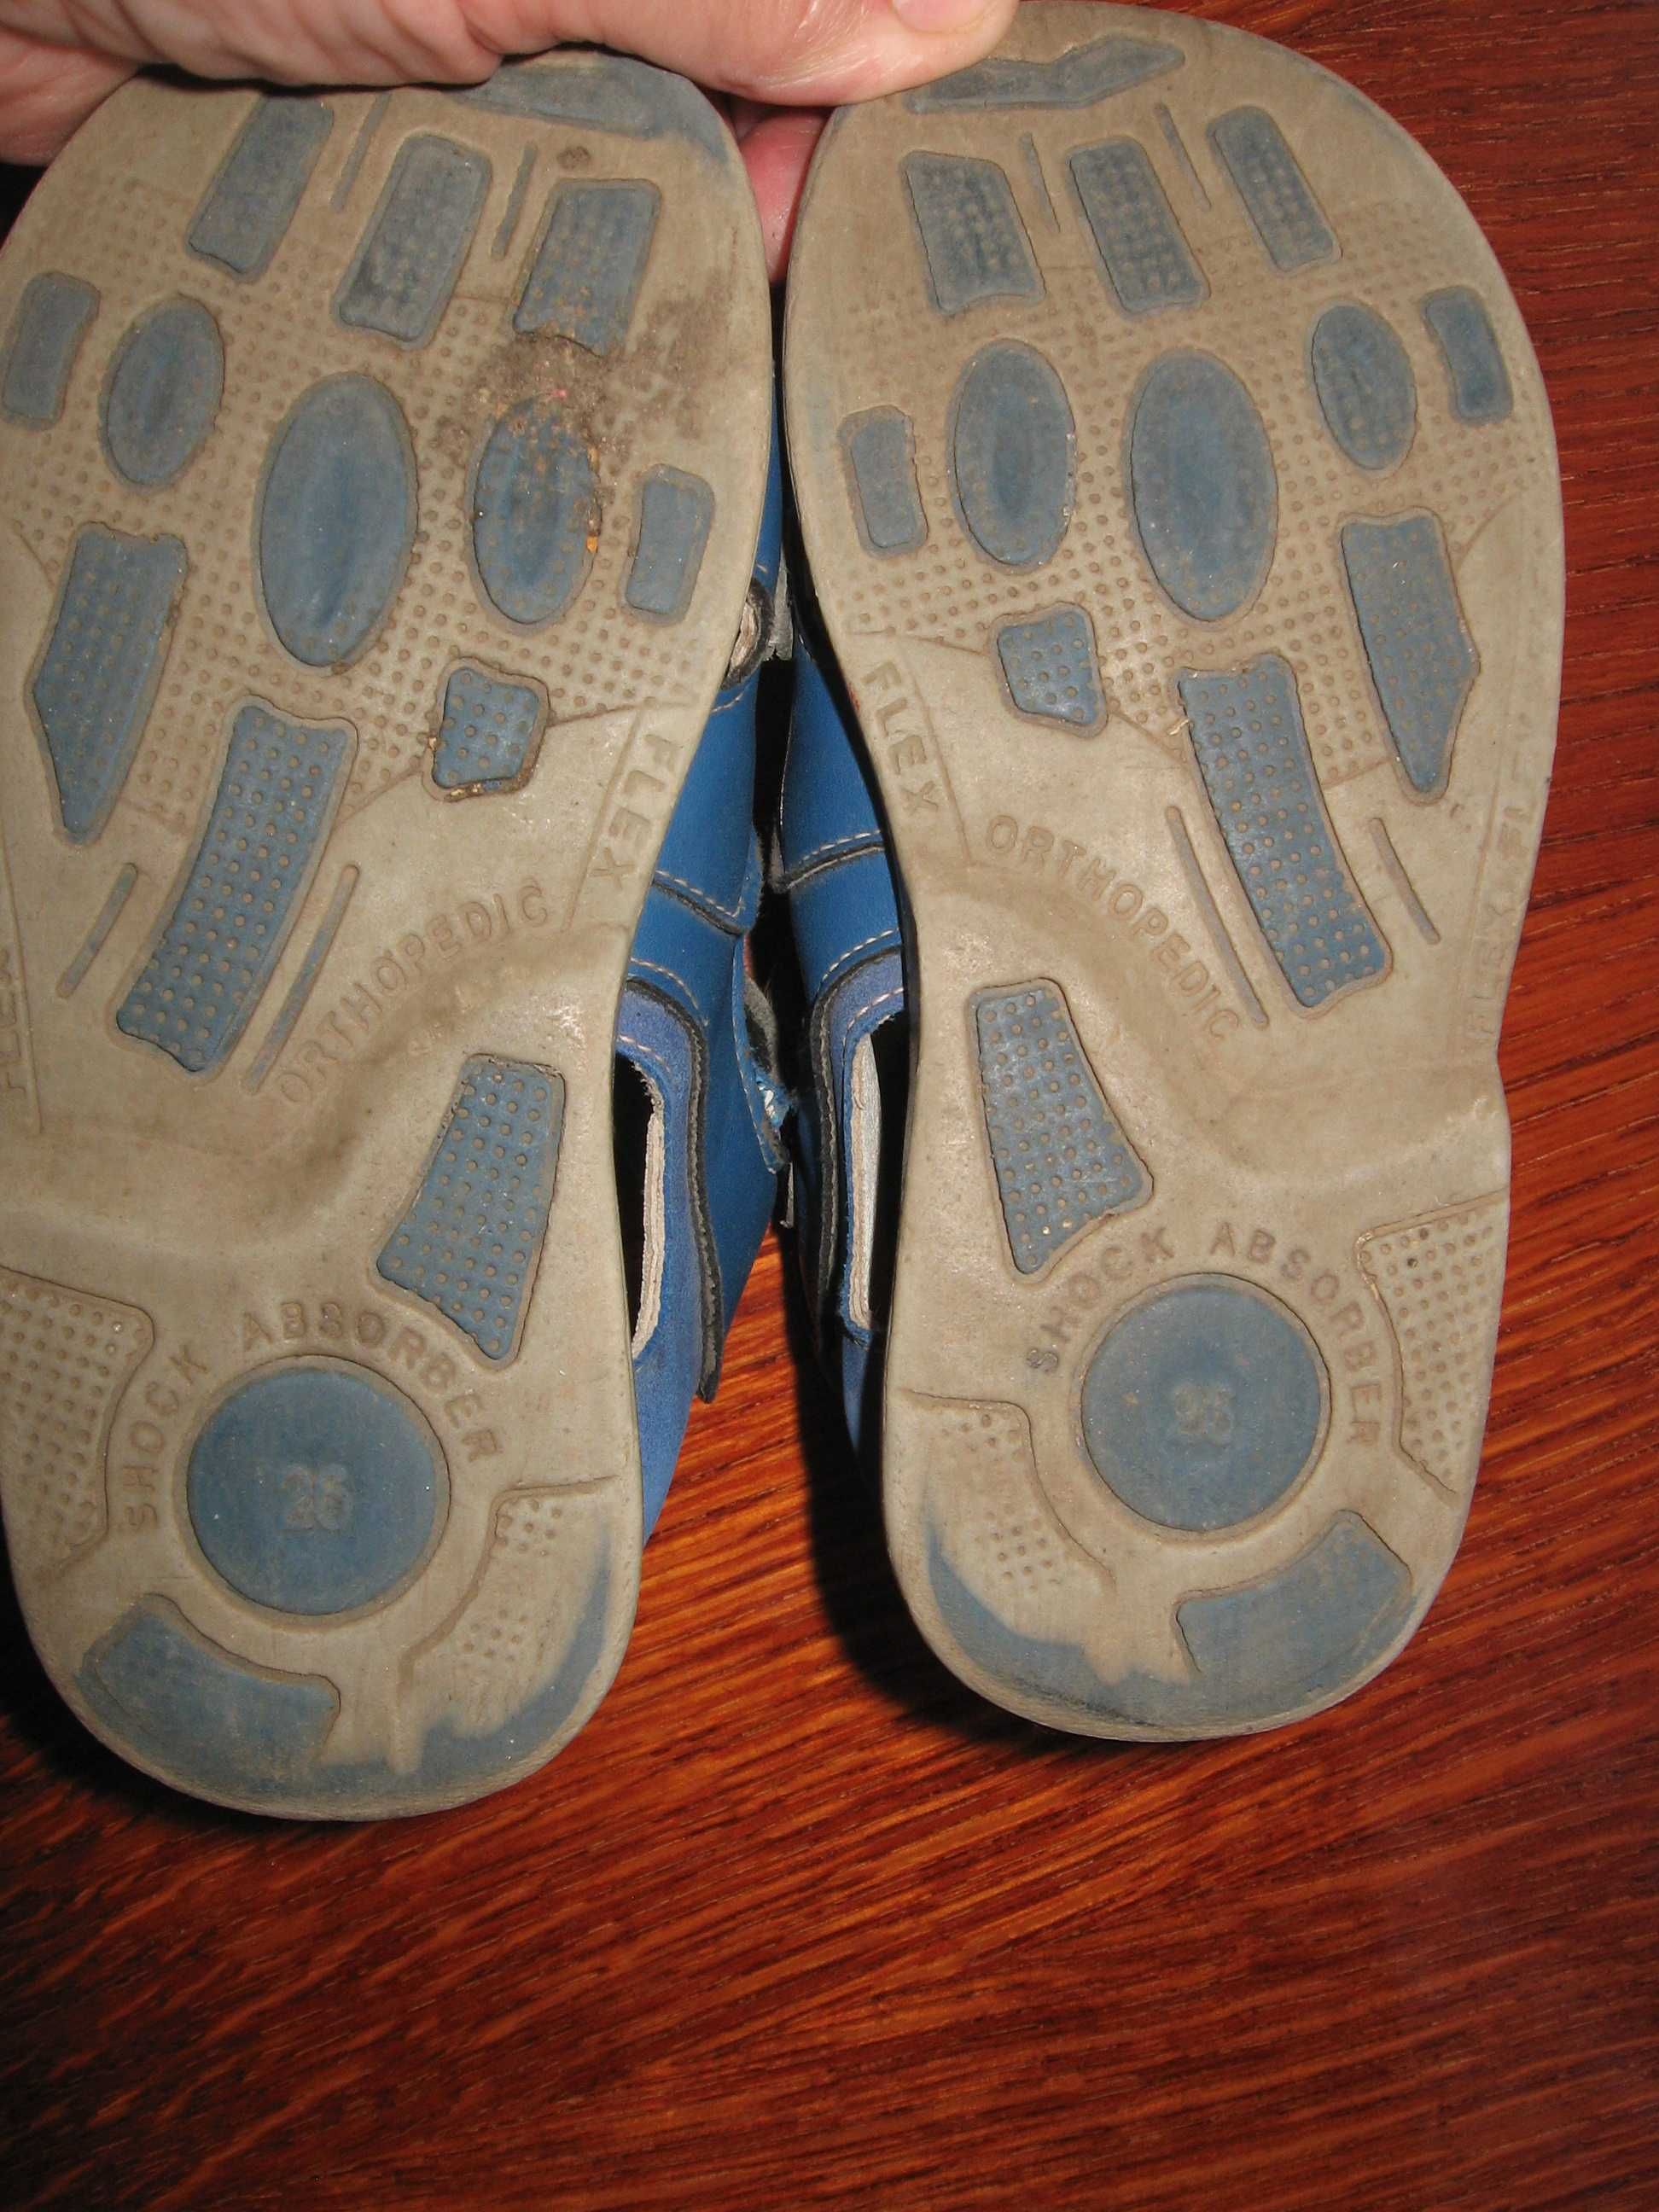 Детские сандали босоножки  ортопедическая обувь дитяче літнє взуття.